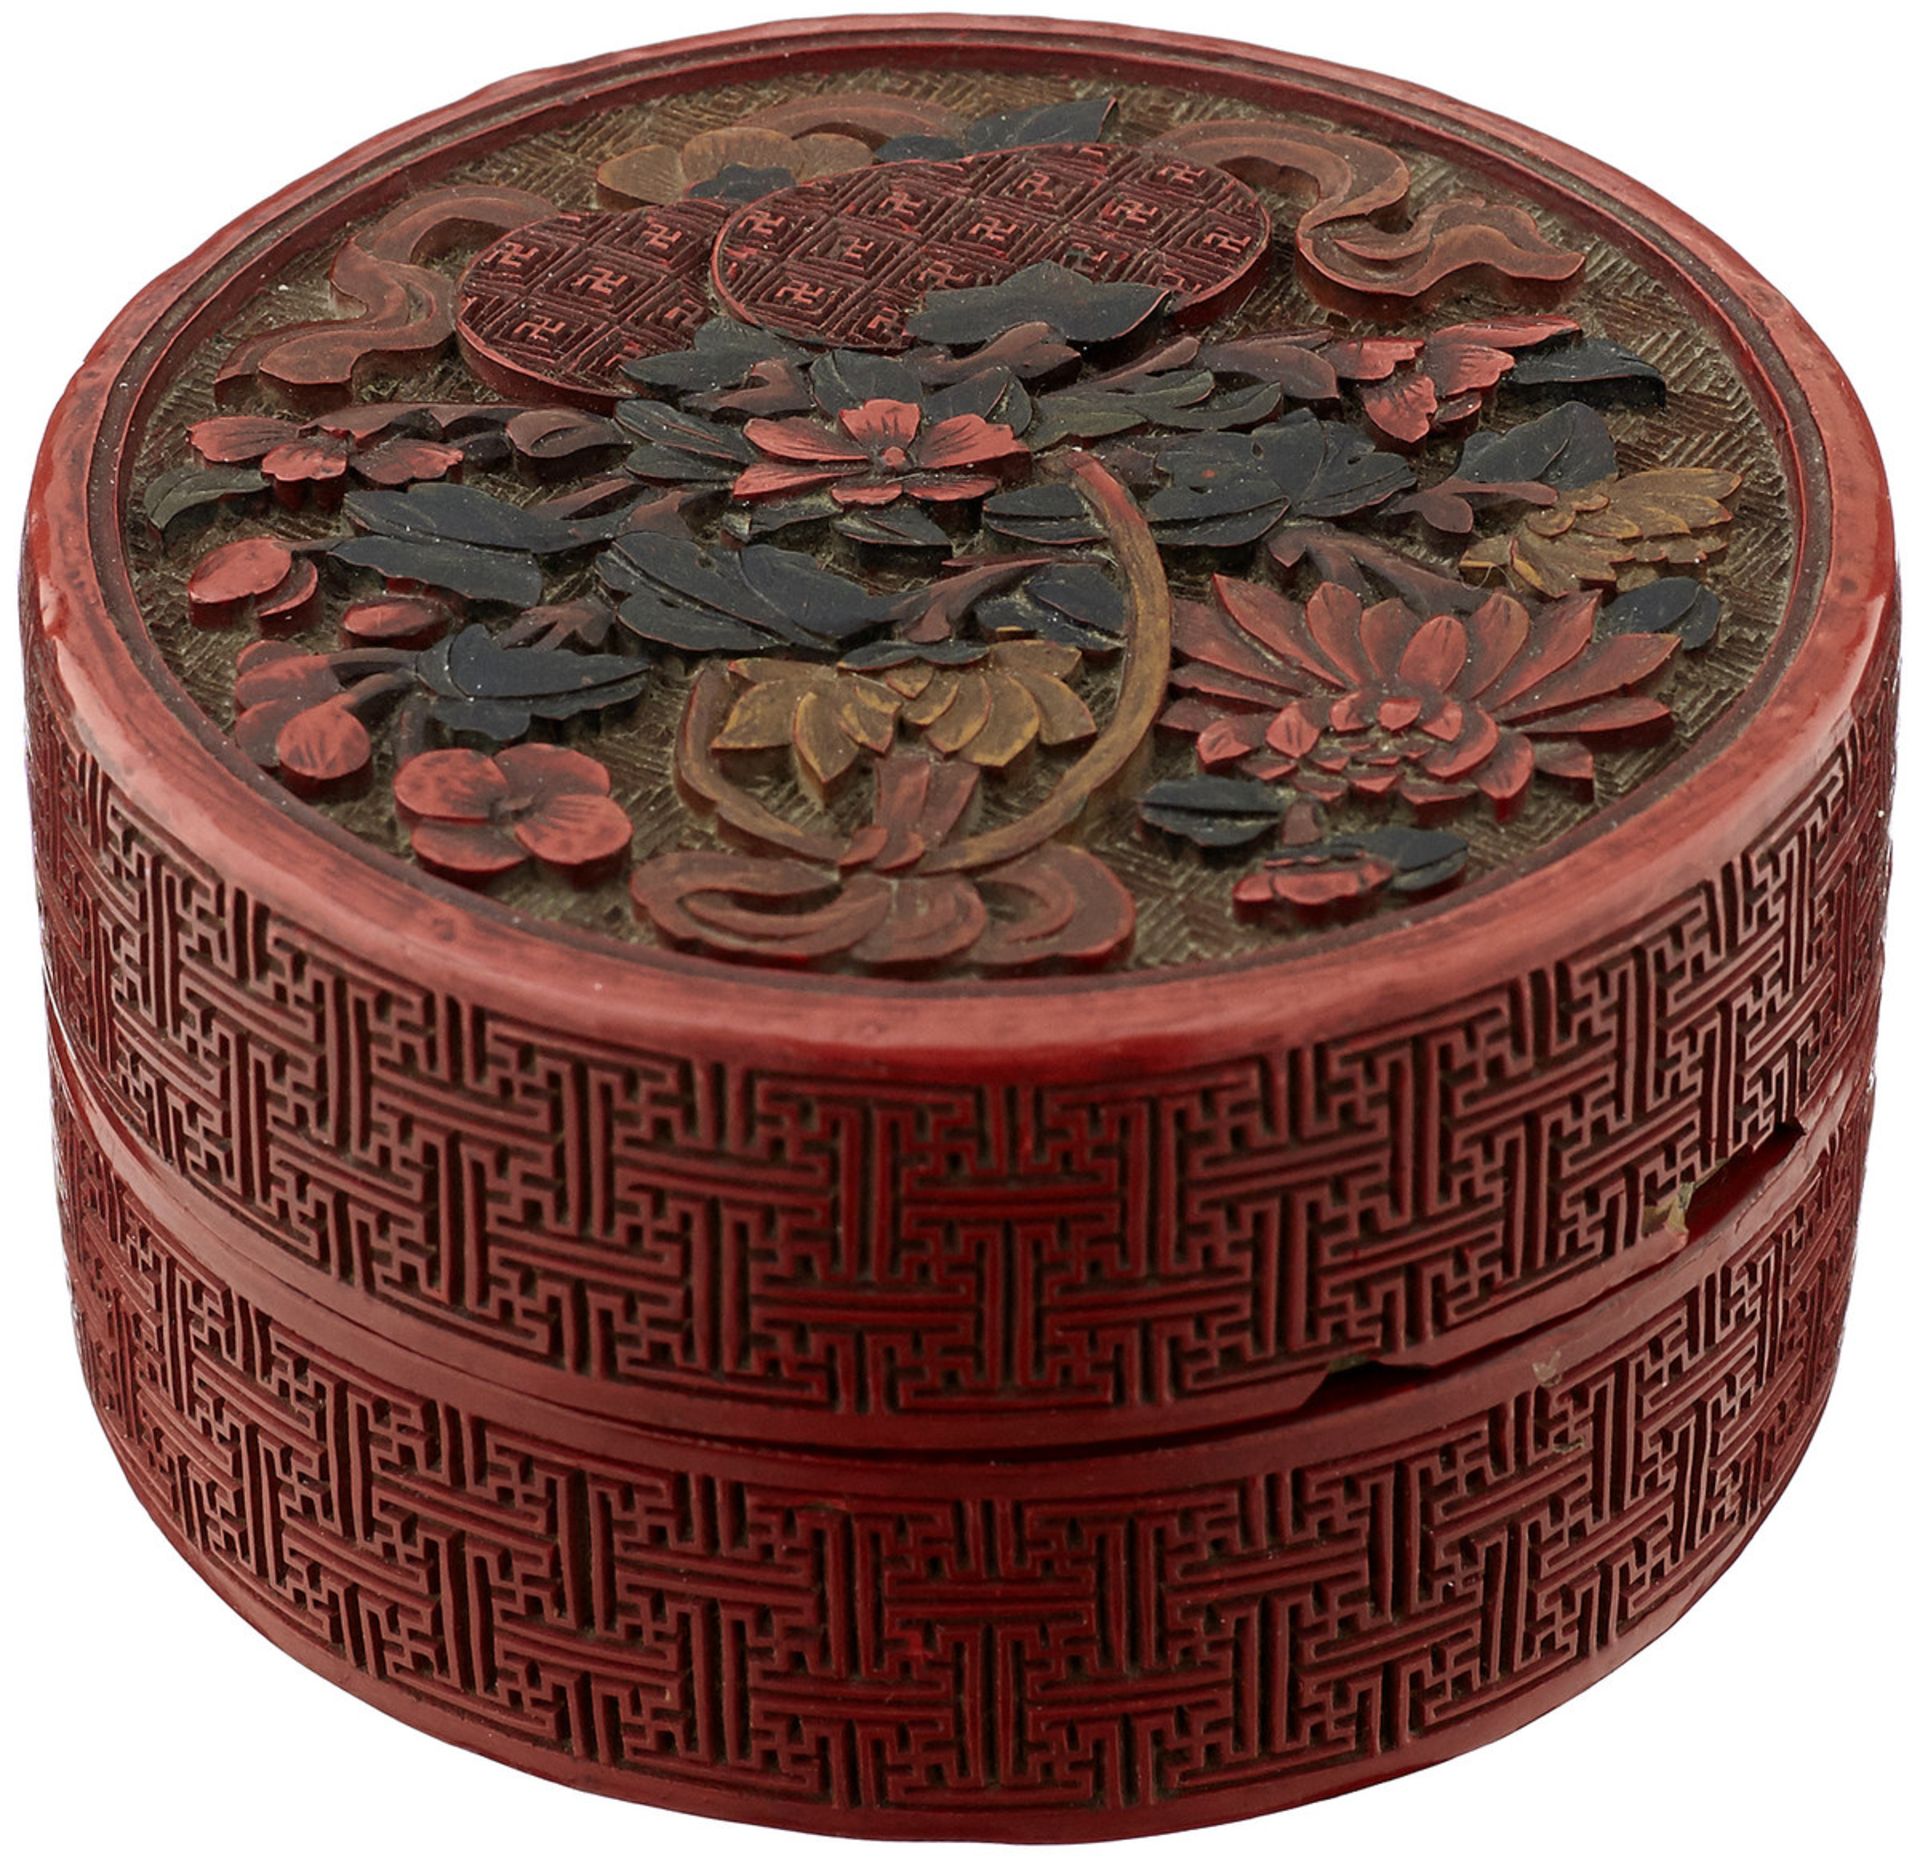 Zwei DeckeldosenChina 19. Jh. Die Runde mit floralem Dekor in geschnitztem und gefärbtem Rotlack, - Bild 2 aus 4